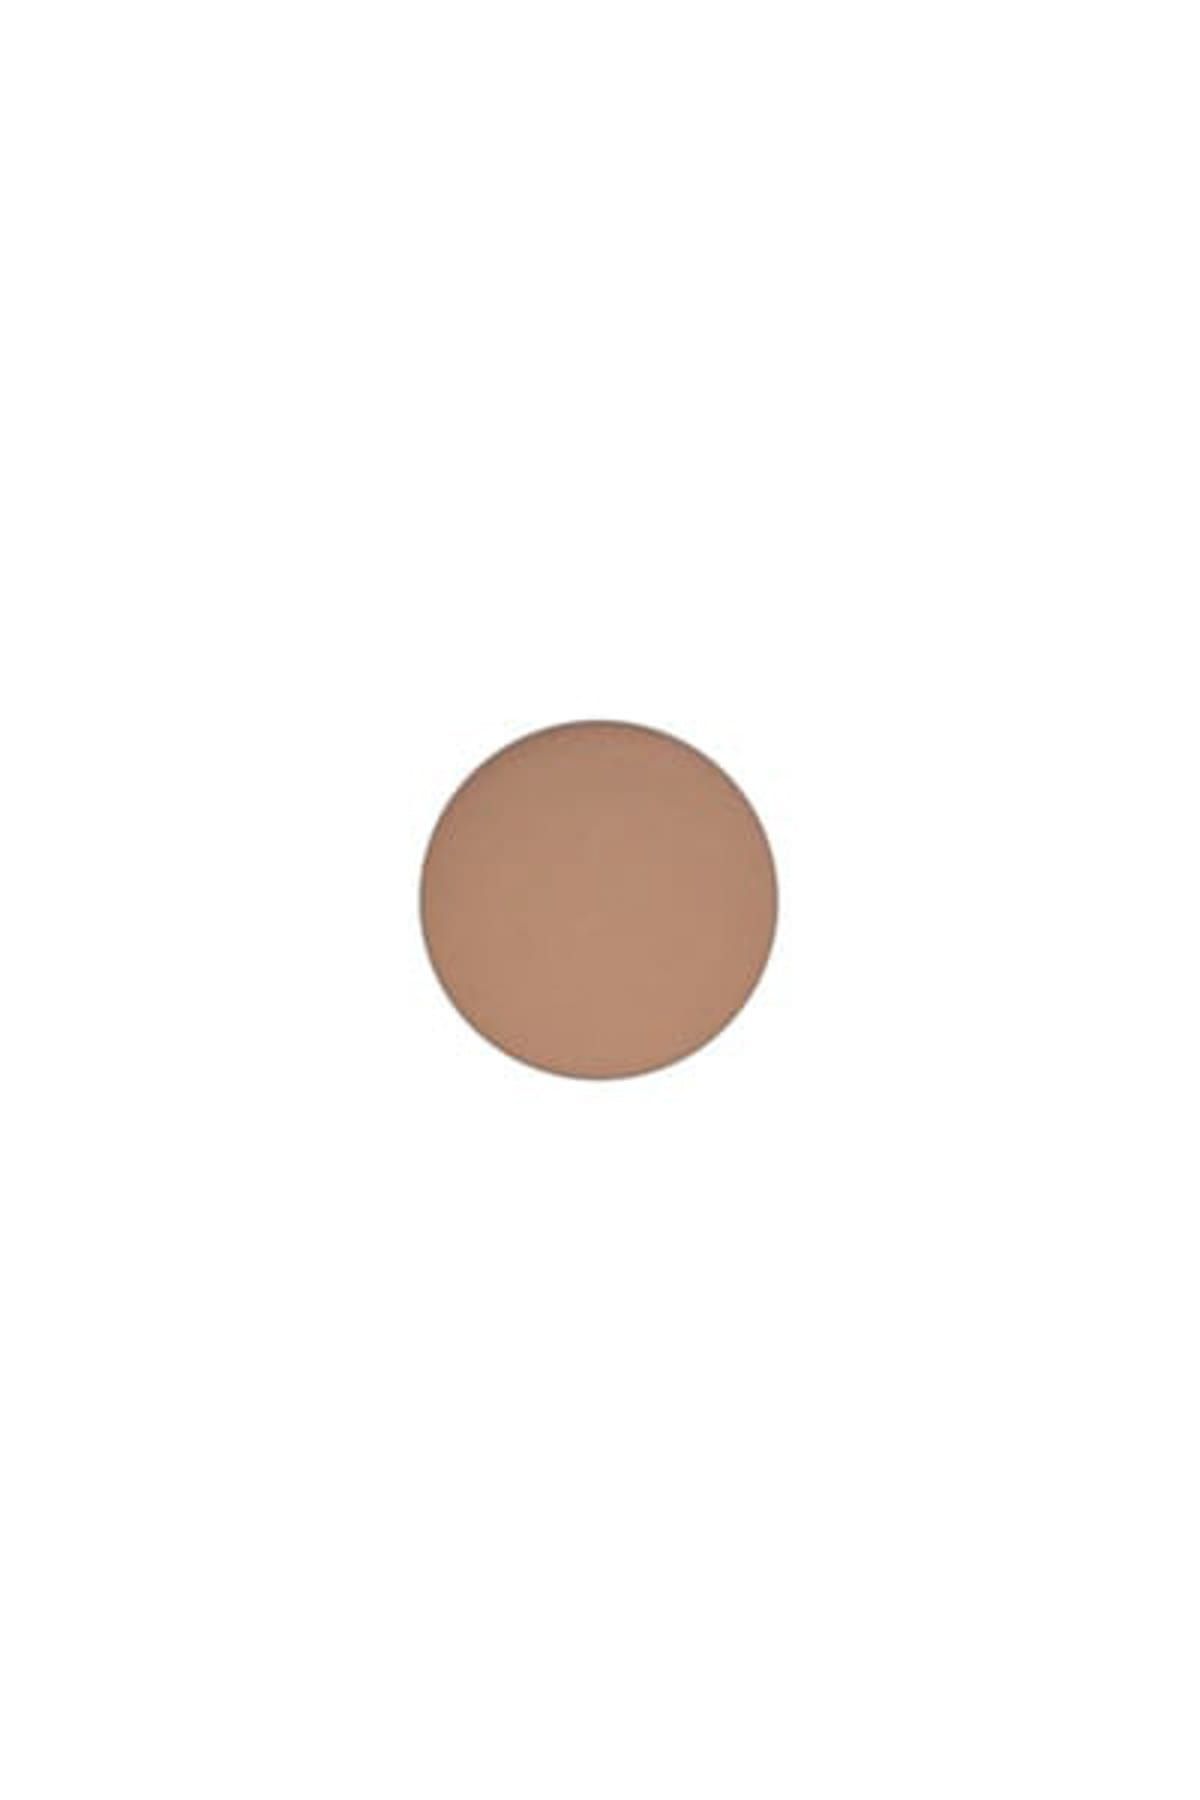 Mac Göz Farı - Refill Far Charcoal Brown 1.5 g 773602036004